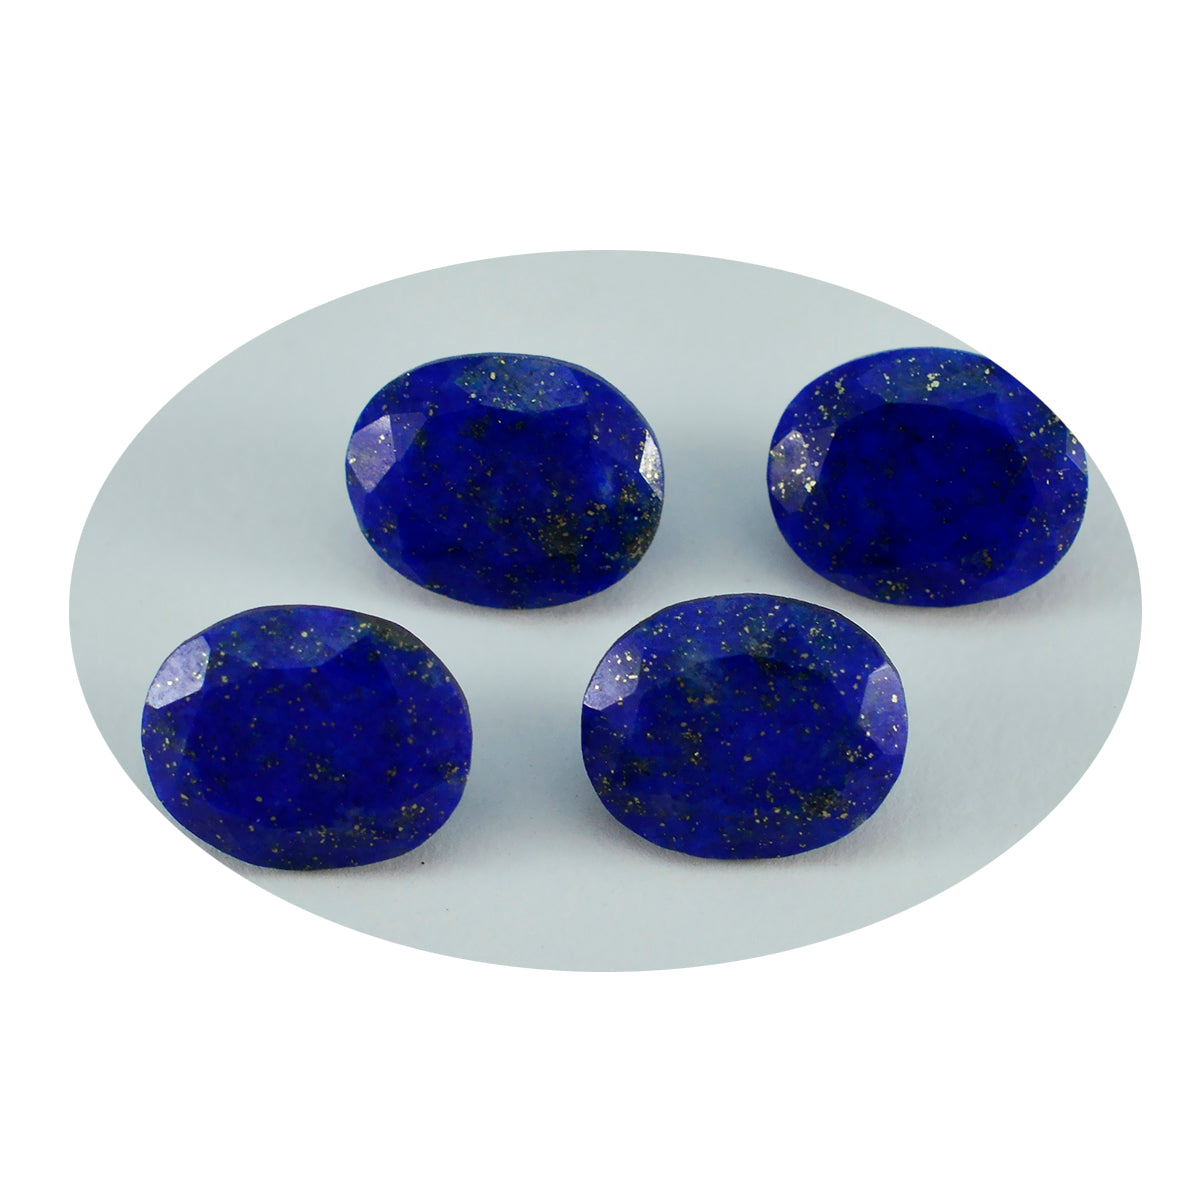 Riyogems 1PC Genuine Blue Lapis Lazuli Faceted 10x12 mm Oval Shape astonishing Quality Loose Stone